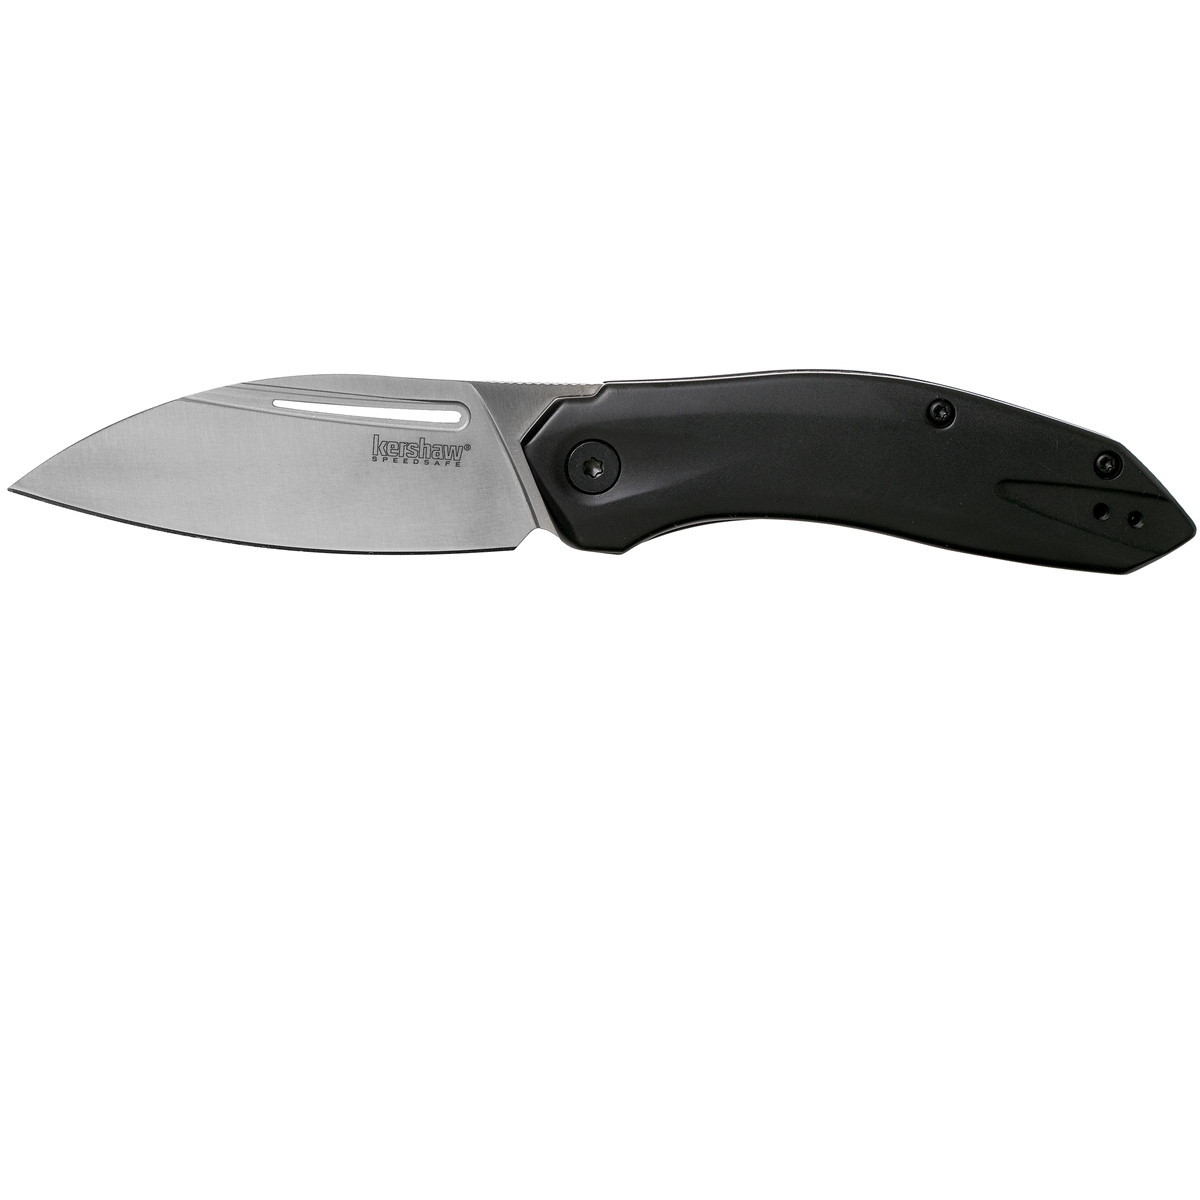 Полуавтоматический складной нож Kershaw Turismo, сталь D2, рукоять нержавеющая сталь